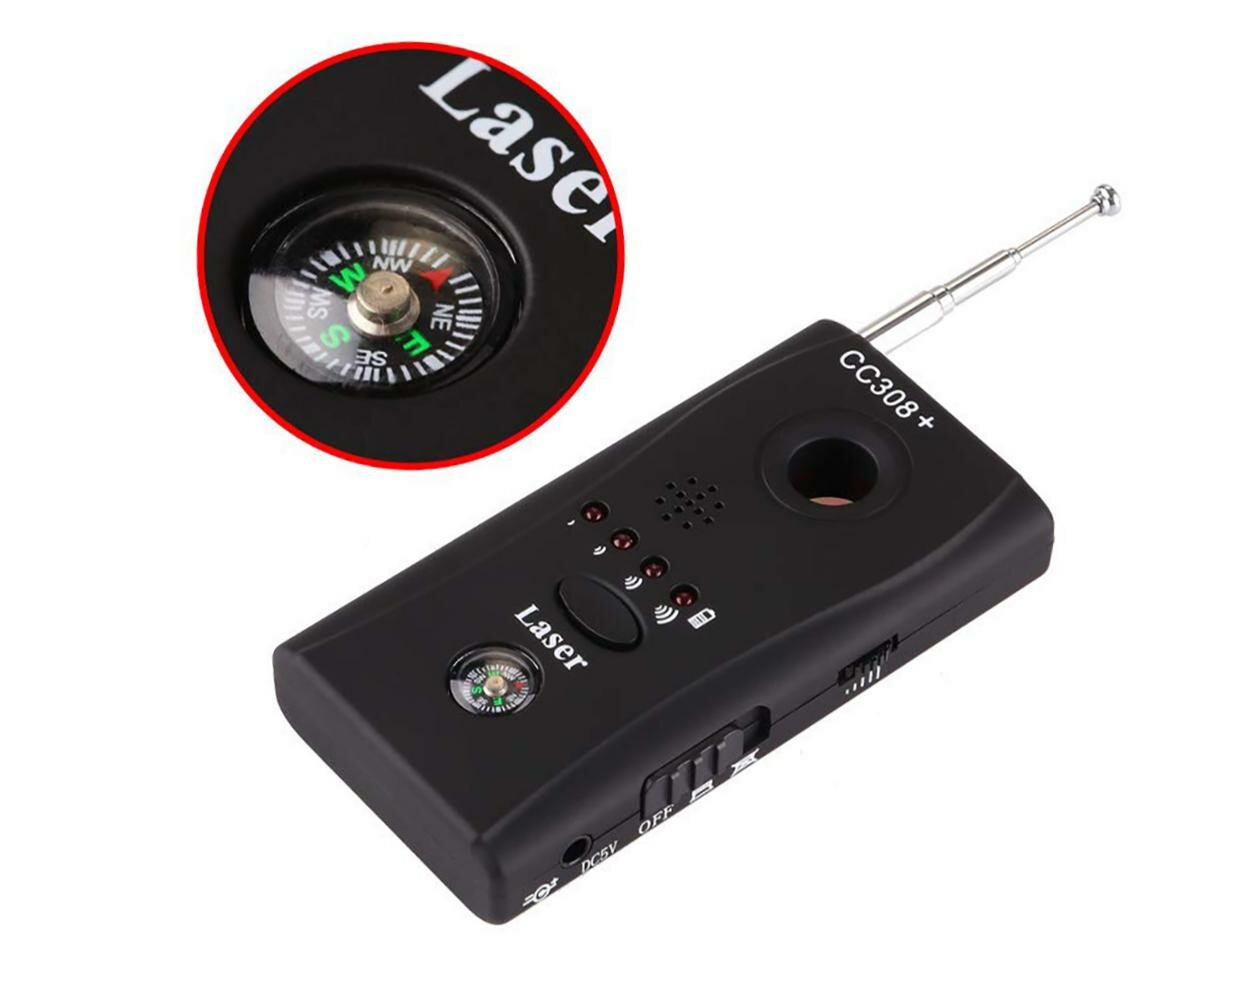 Антижучок с детектором скрытых камер - Антибаг Хантер плюс (J4929EU) (автономная работа и широкий диапазон от 1 до 6500 МГц)